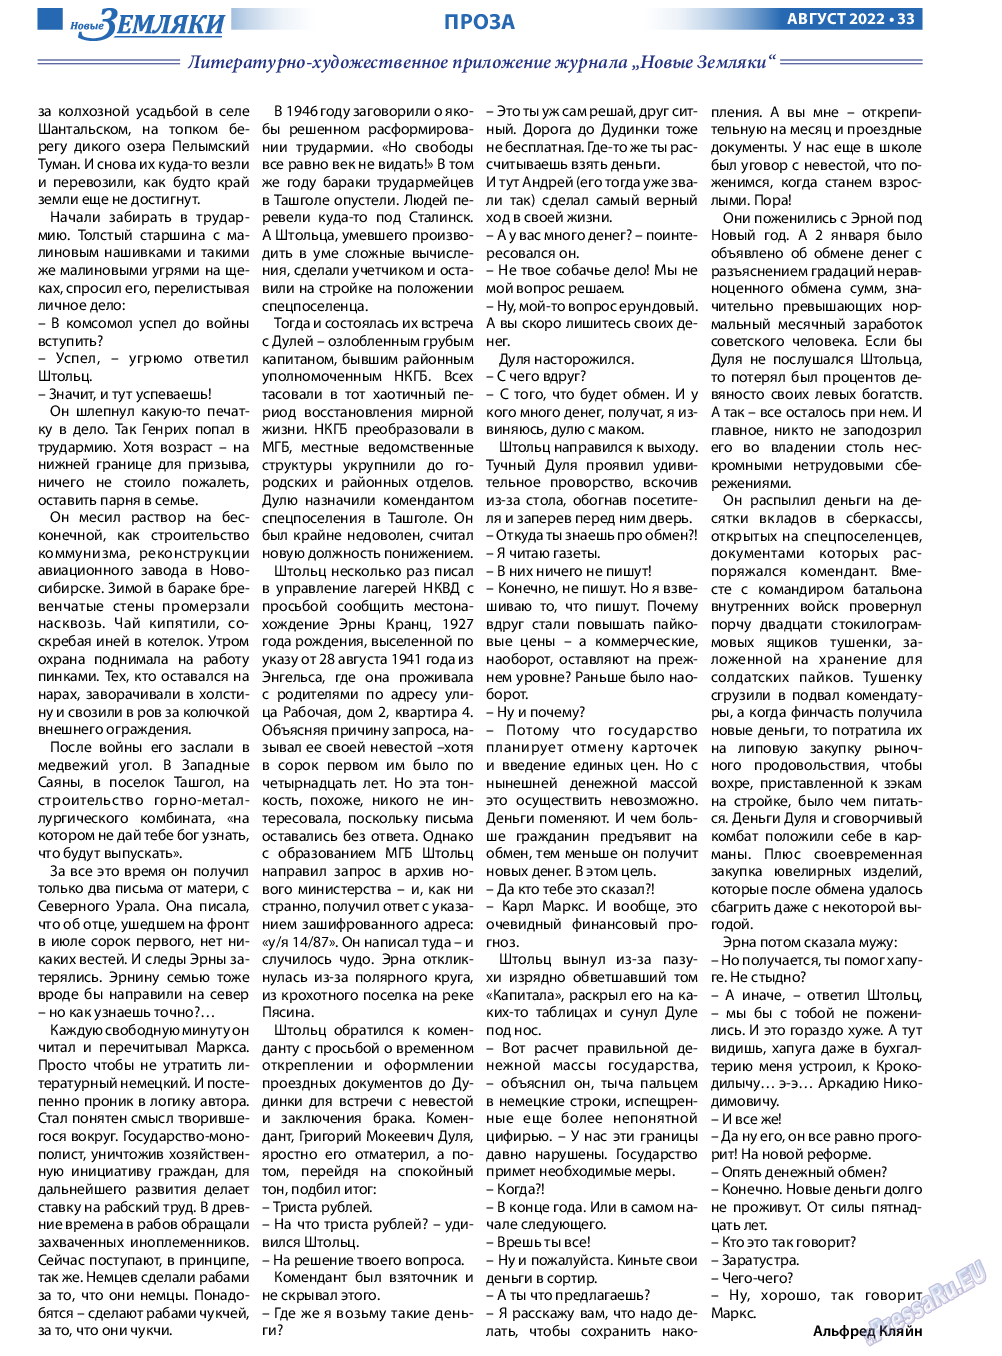 Новые Земляки, газета. 2022 №8 стр.33